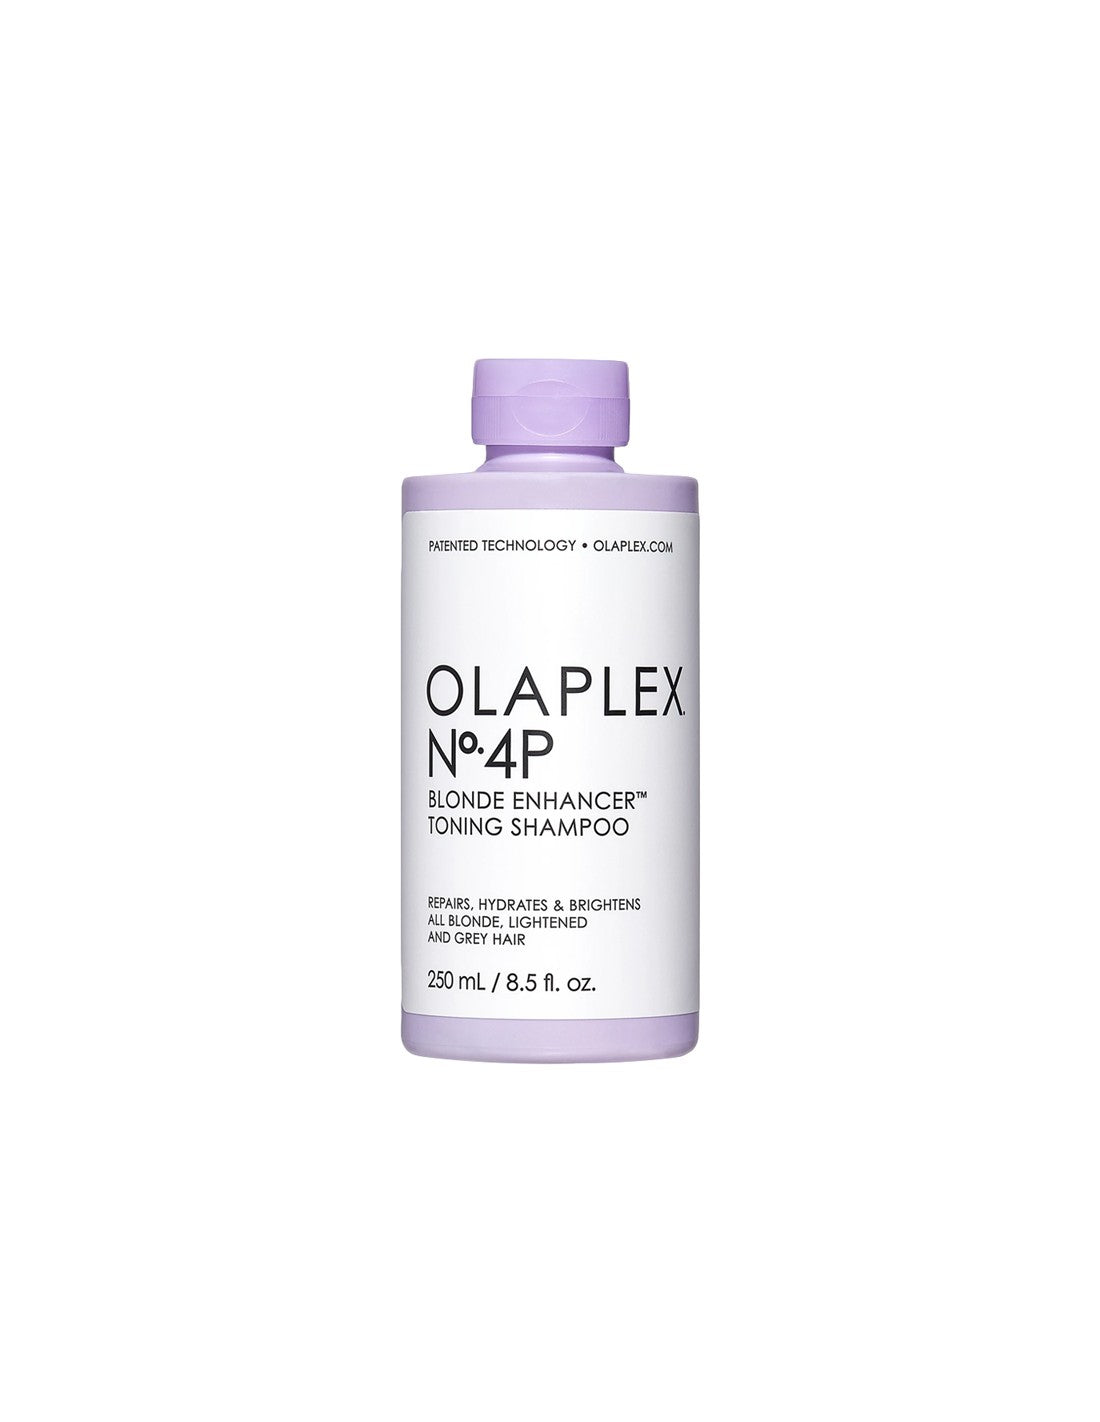 OLAPLEX 4P - BLONDE ENHANCER TONING BOND MAINTENANCE SHAMPOO 250ML